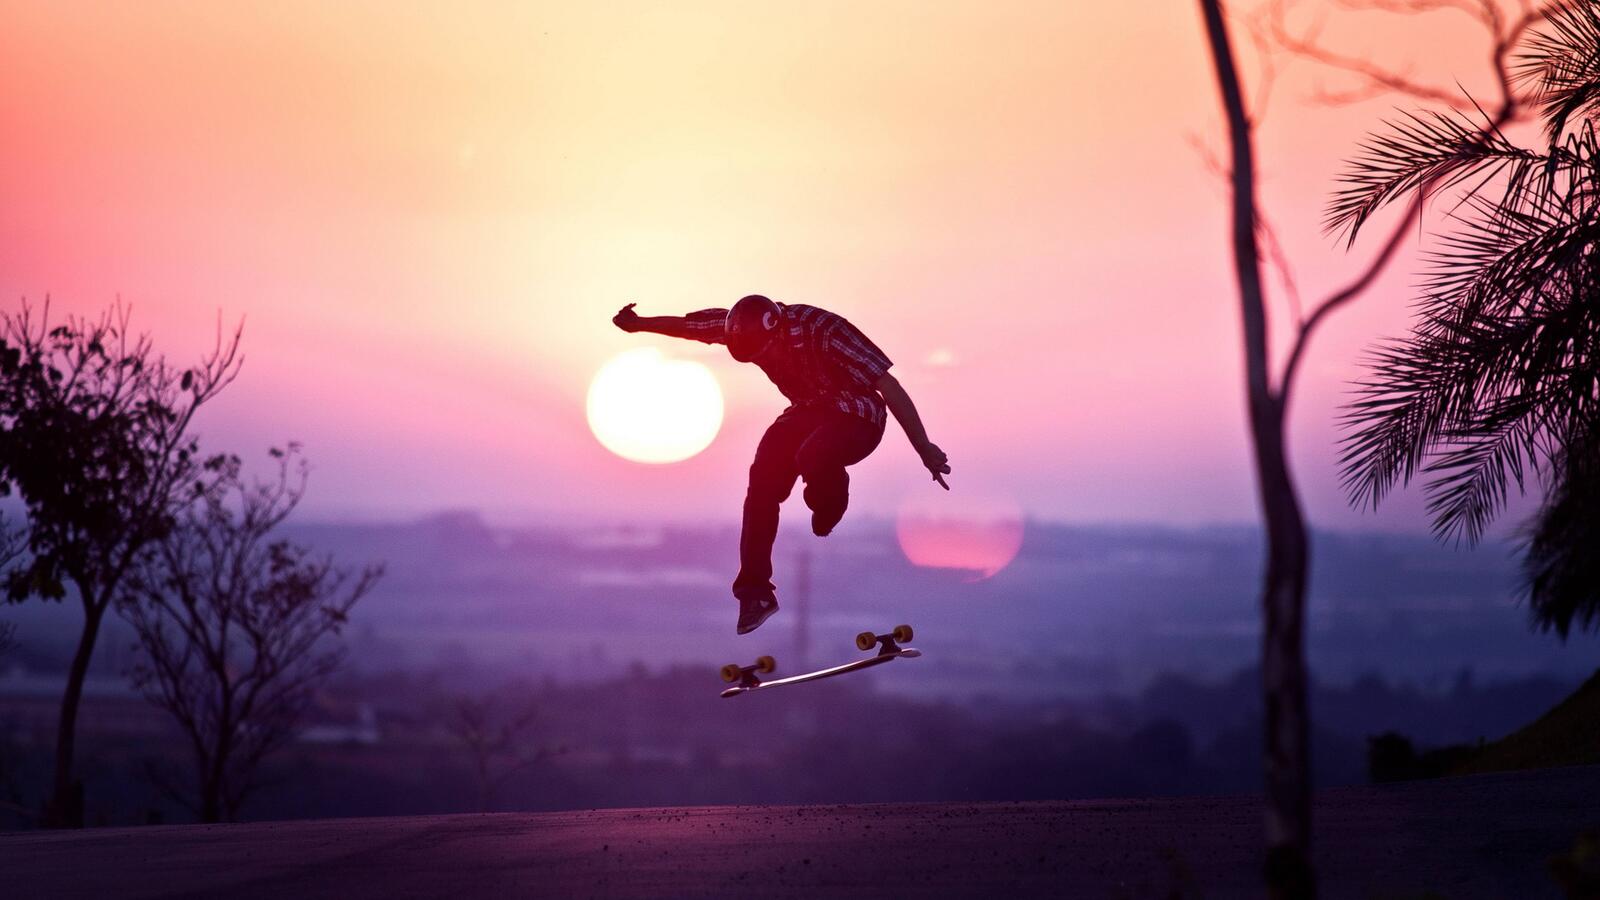 Wallpapers skateboarder road sun on the desktop